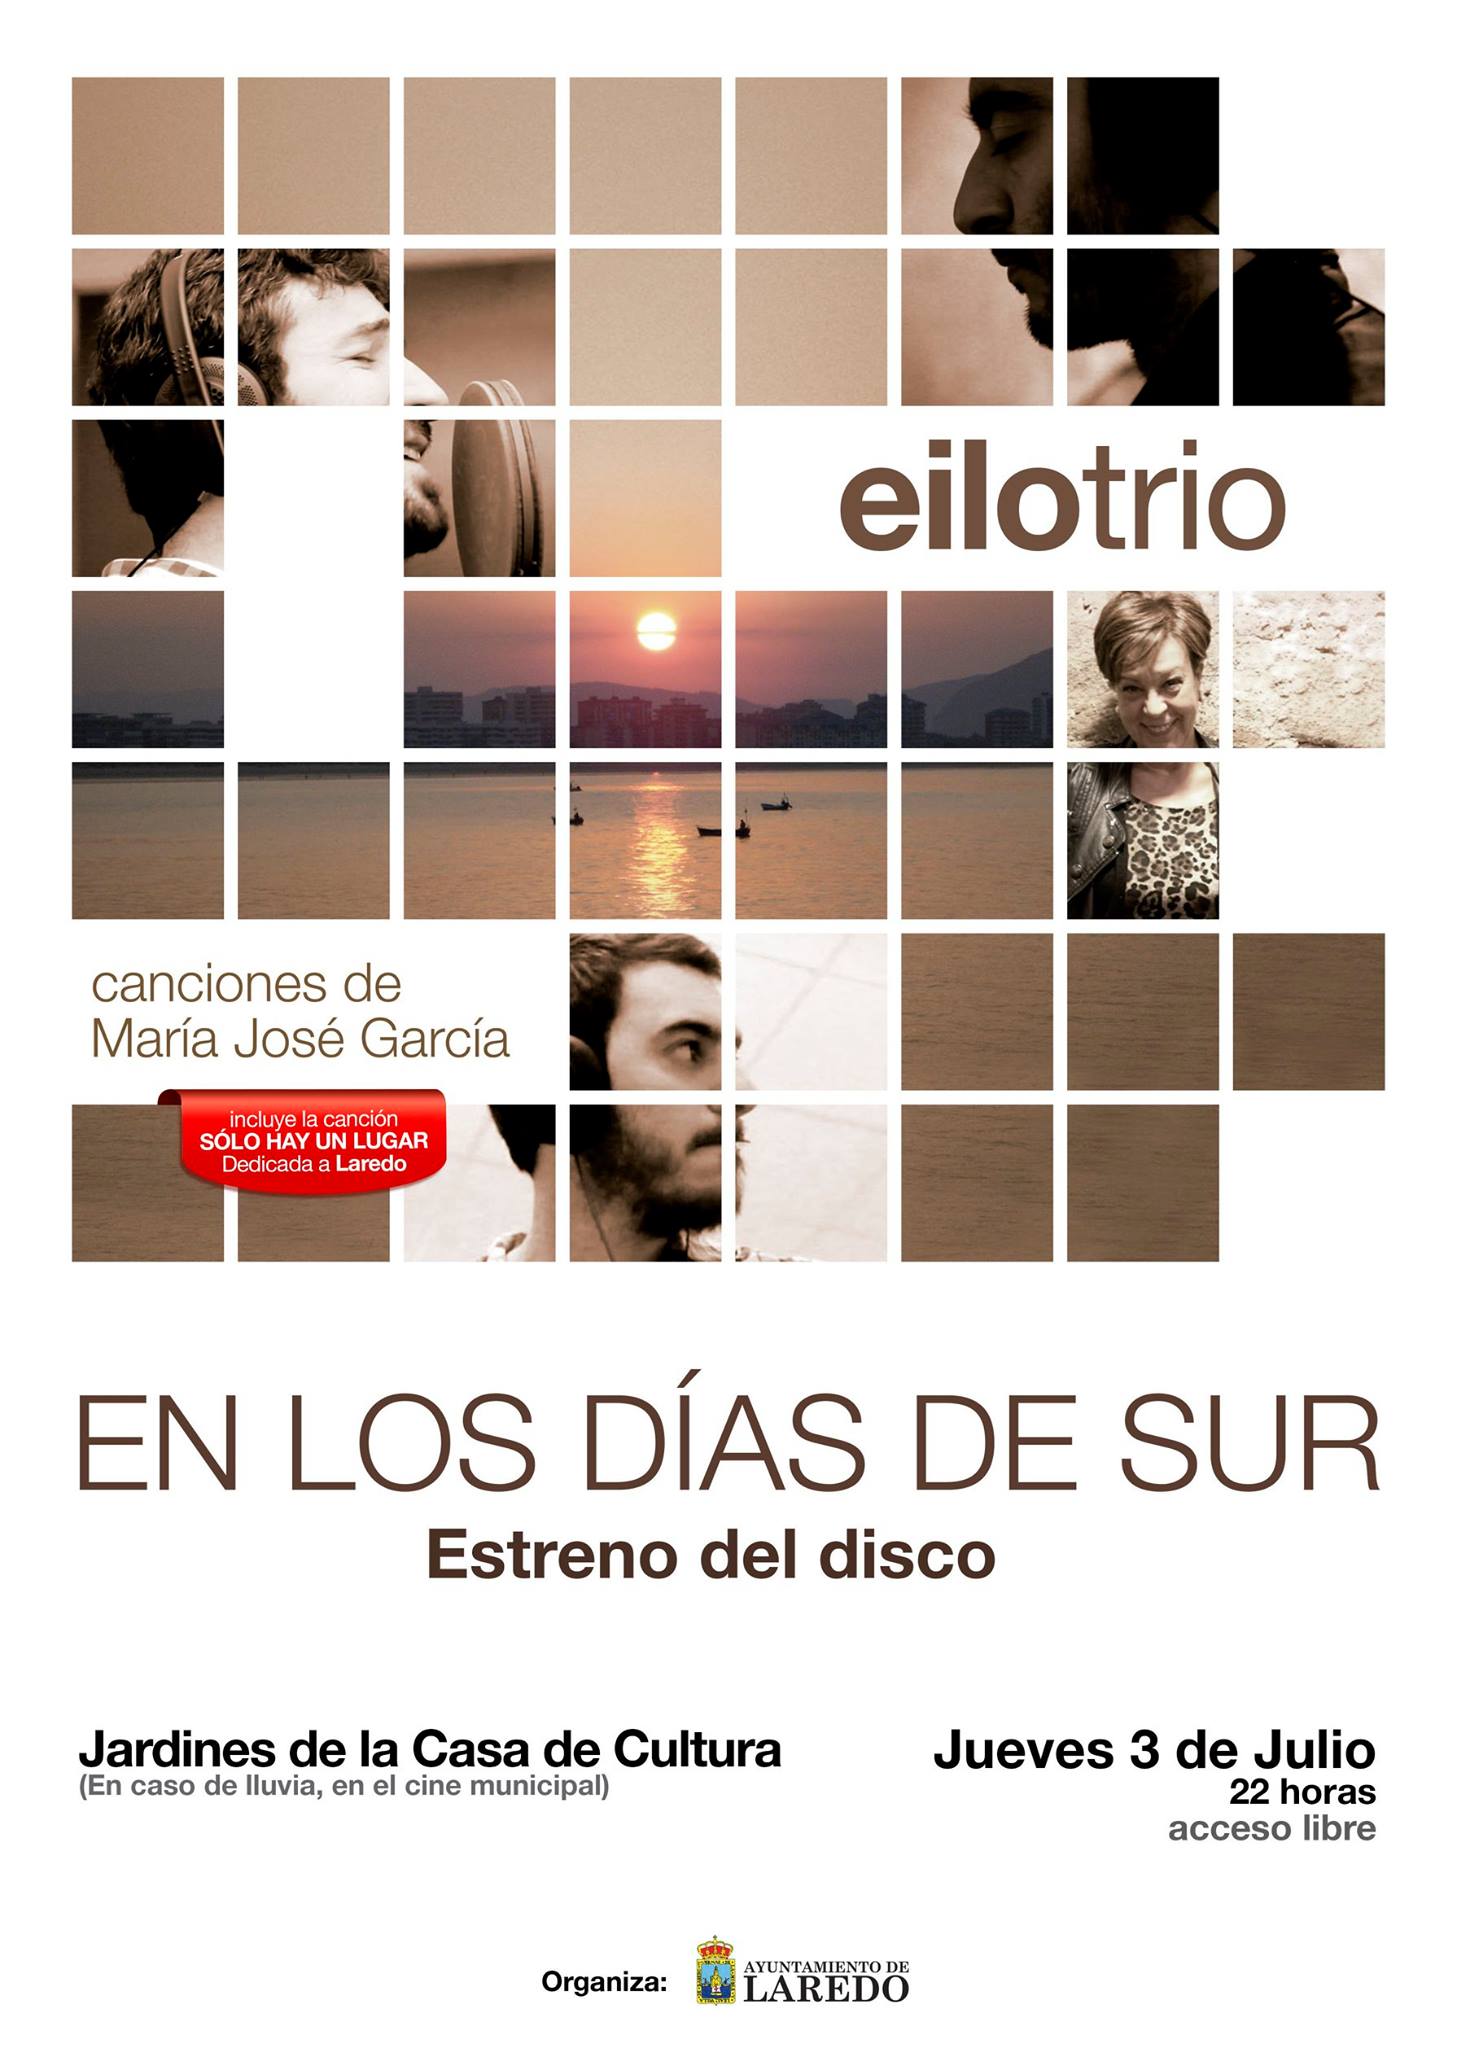 2014 julio 03 - Concierto EiloTrío